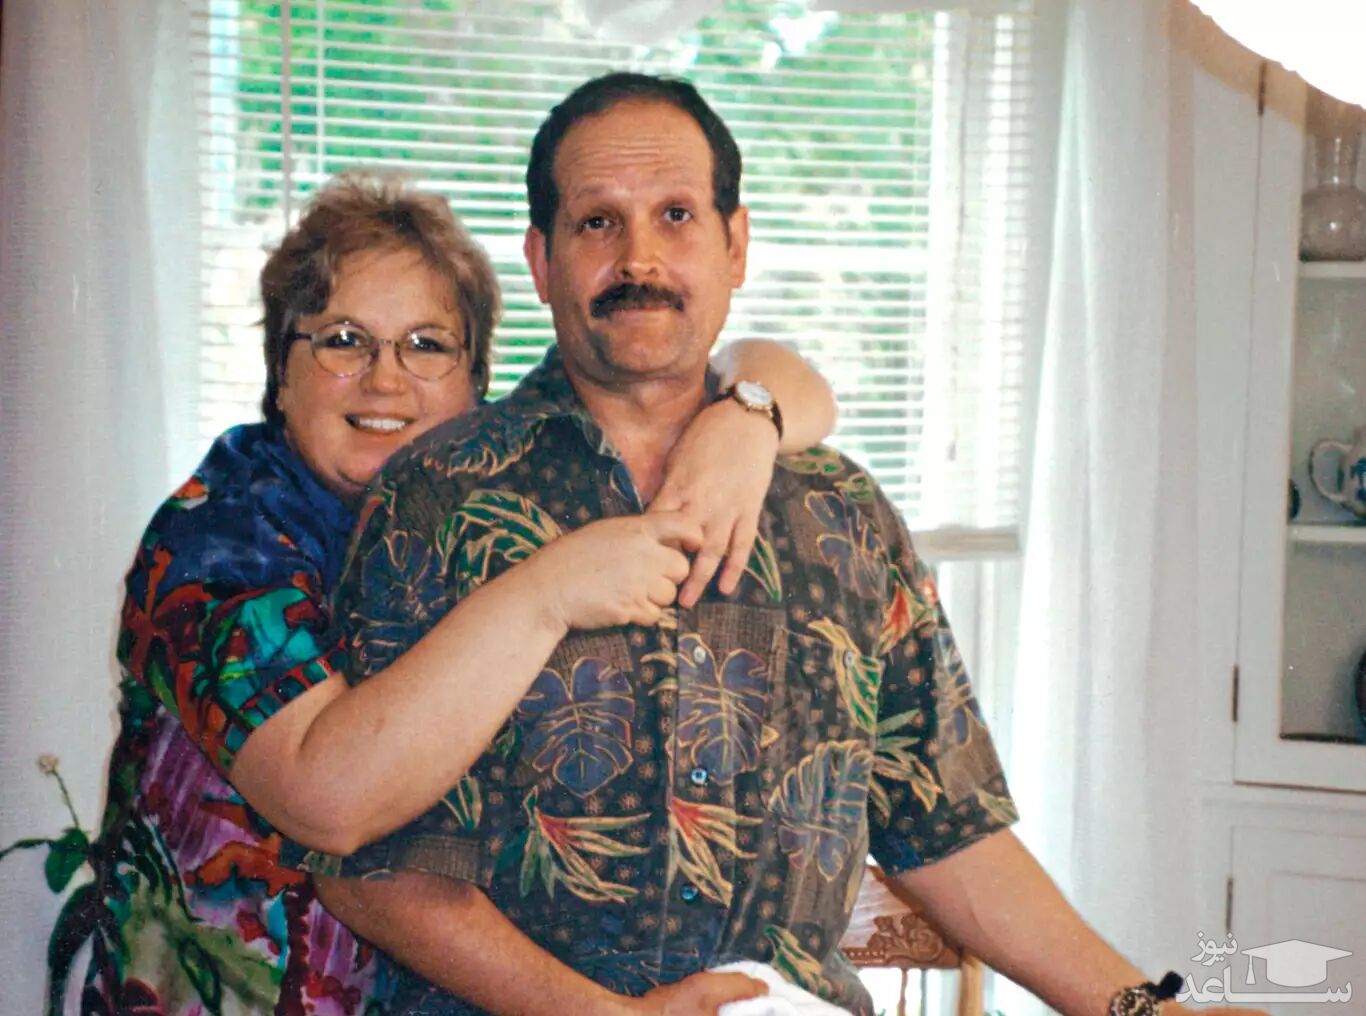 نویسنده «چگونه شوهر خود را به قتل برسانیم» همسرش را کشت